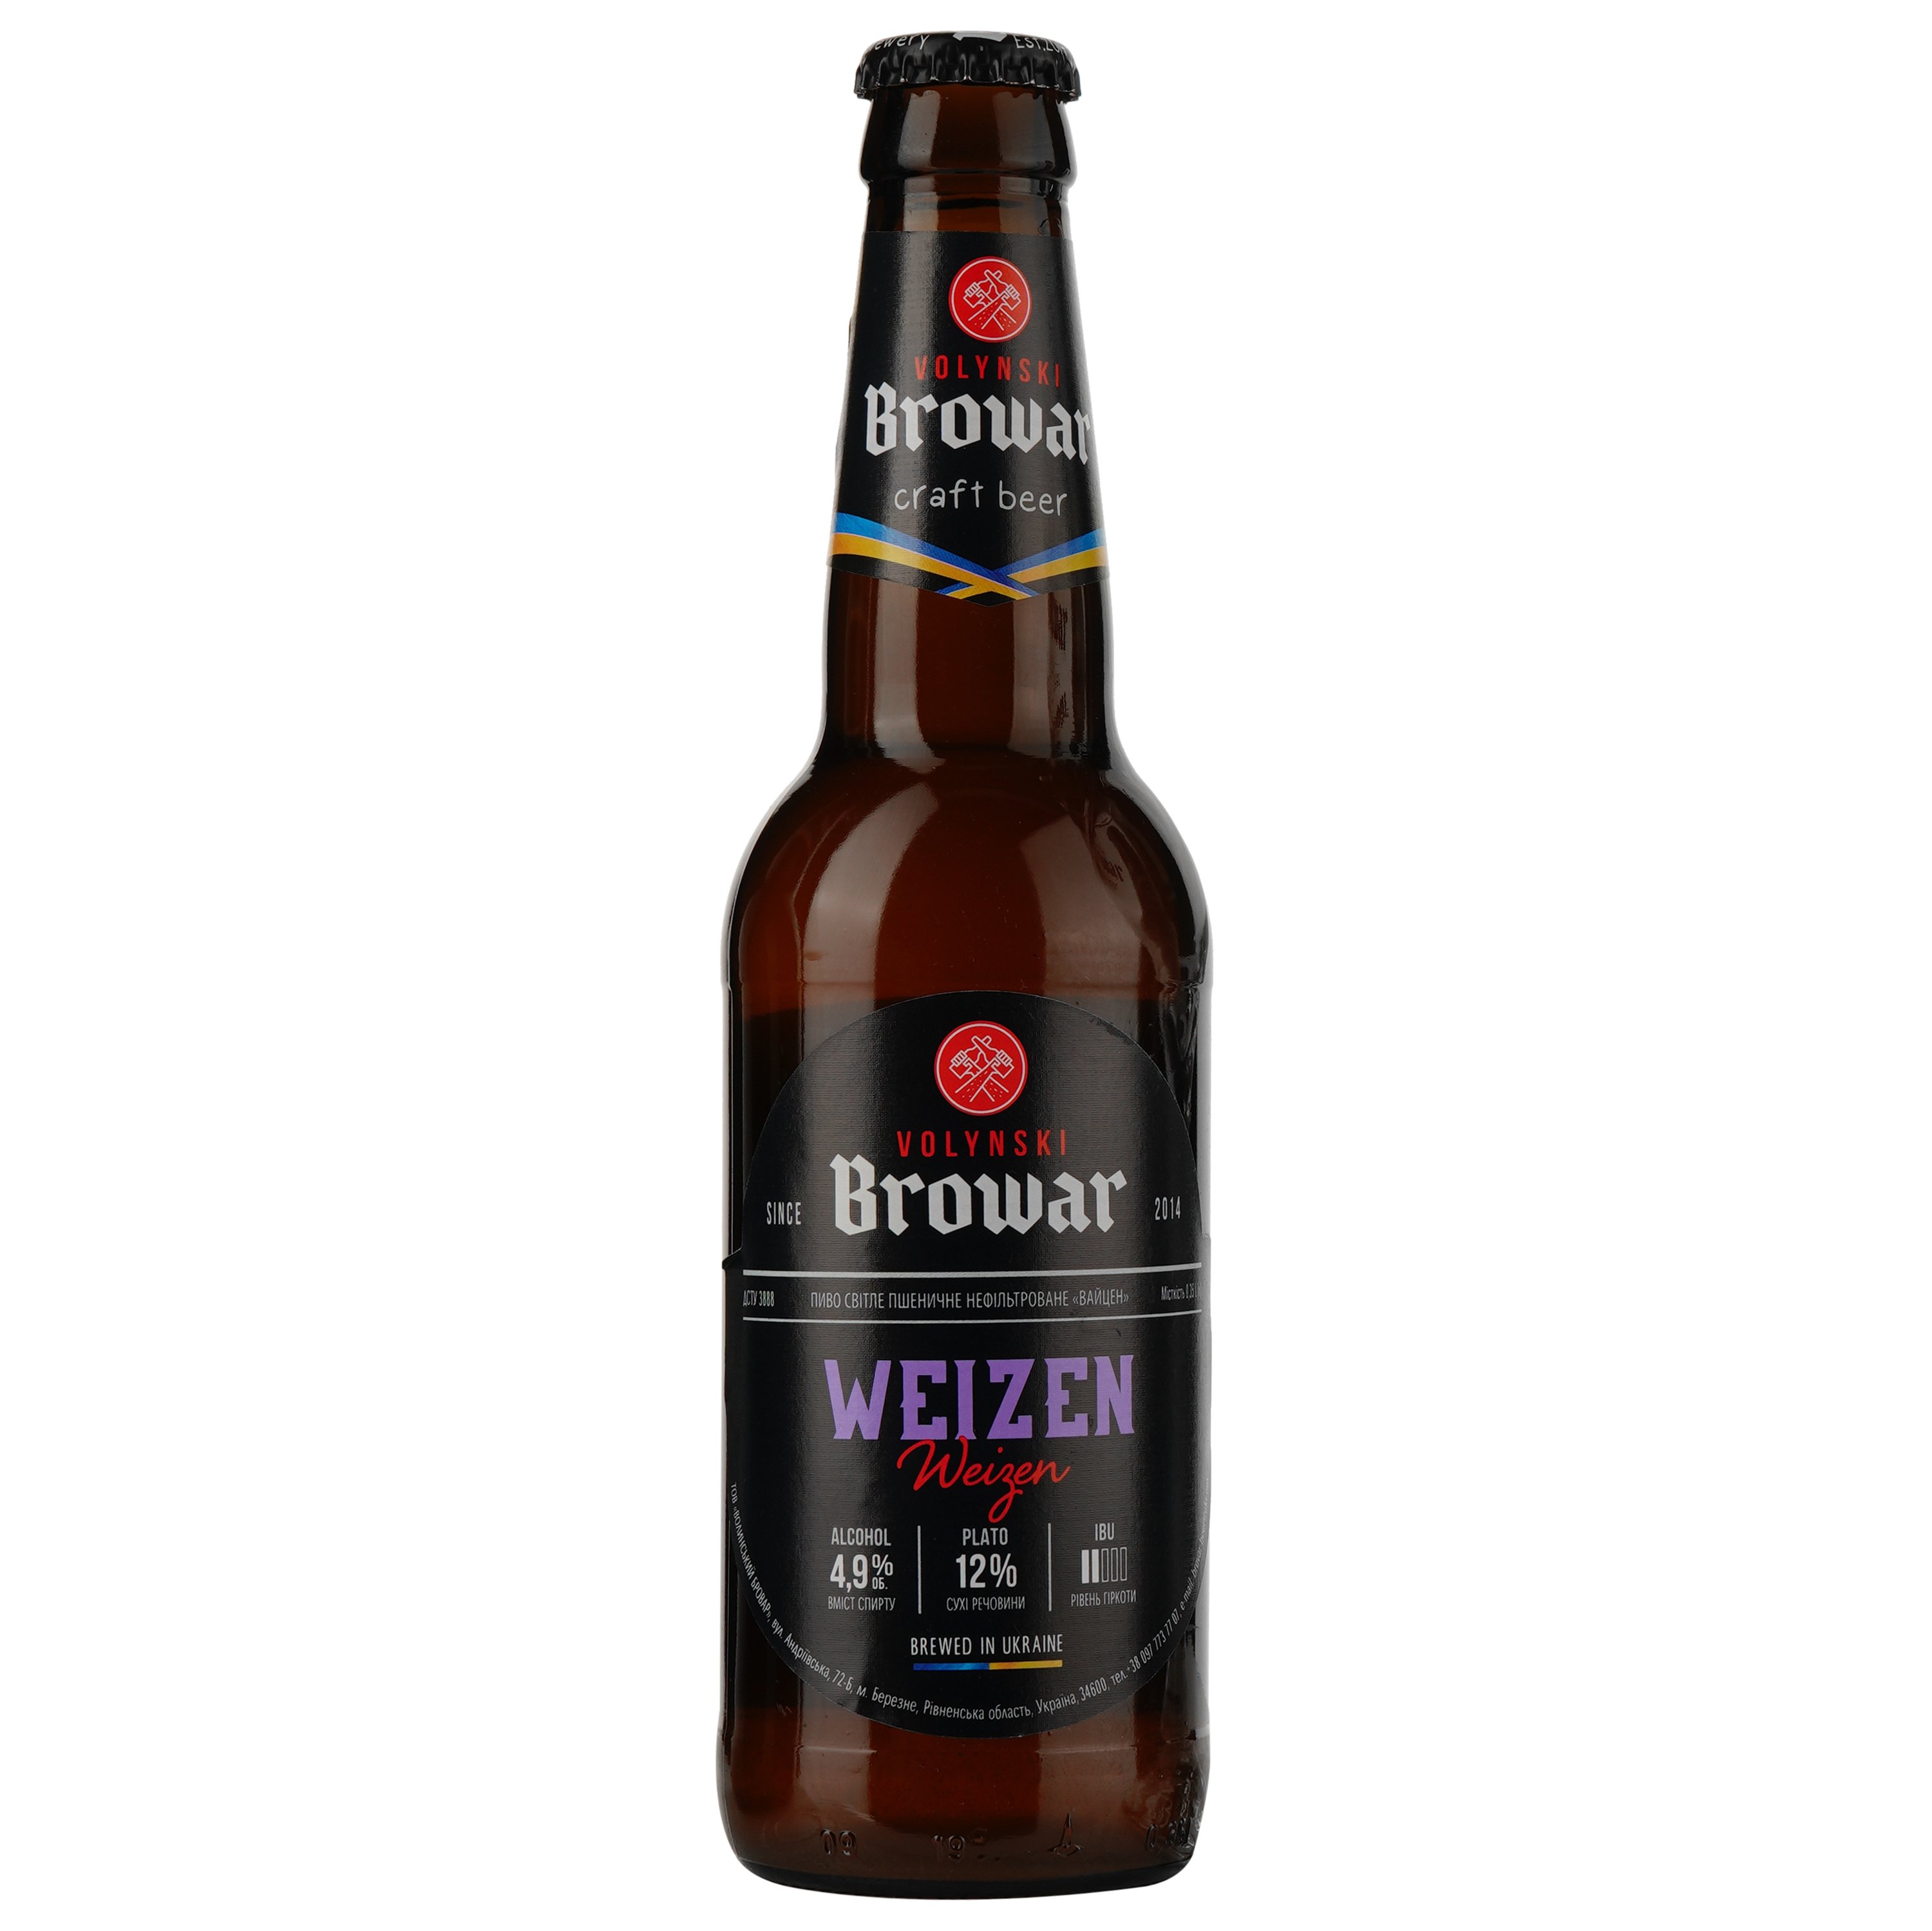 Подарунковий набір пива Volynski Browar, 3,8-5,8%, 1,4 л (4 шт. по 0,35 л) + Келих Somelier, 0,4 л - фото 4